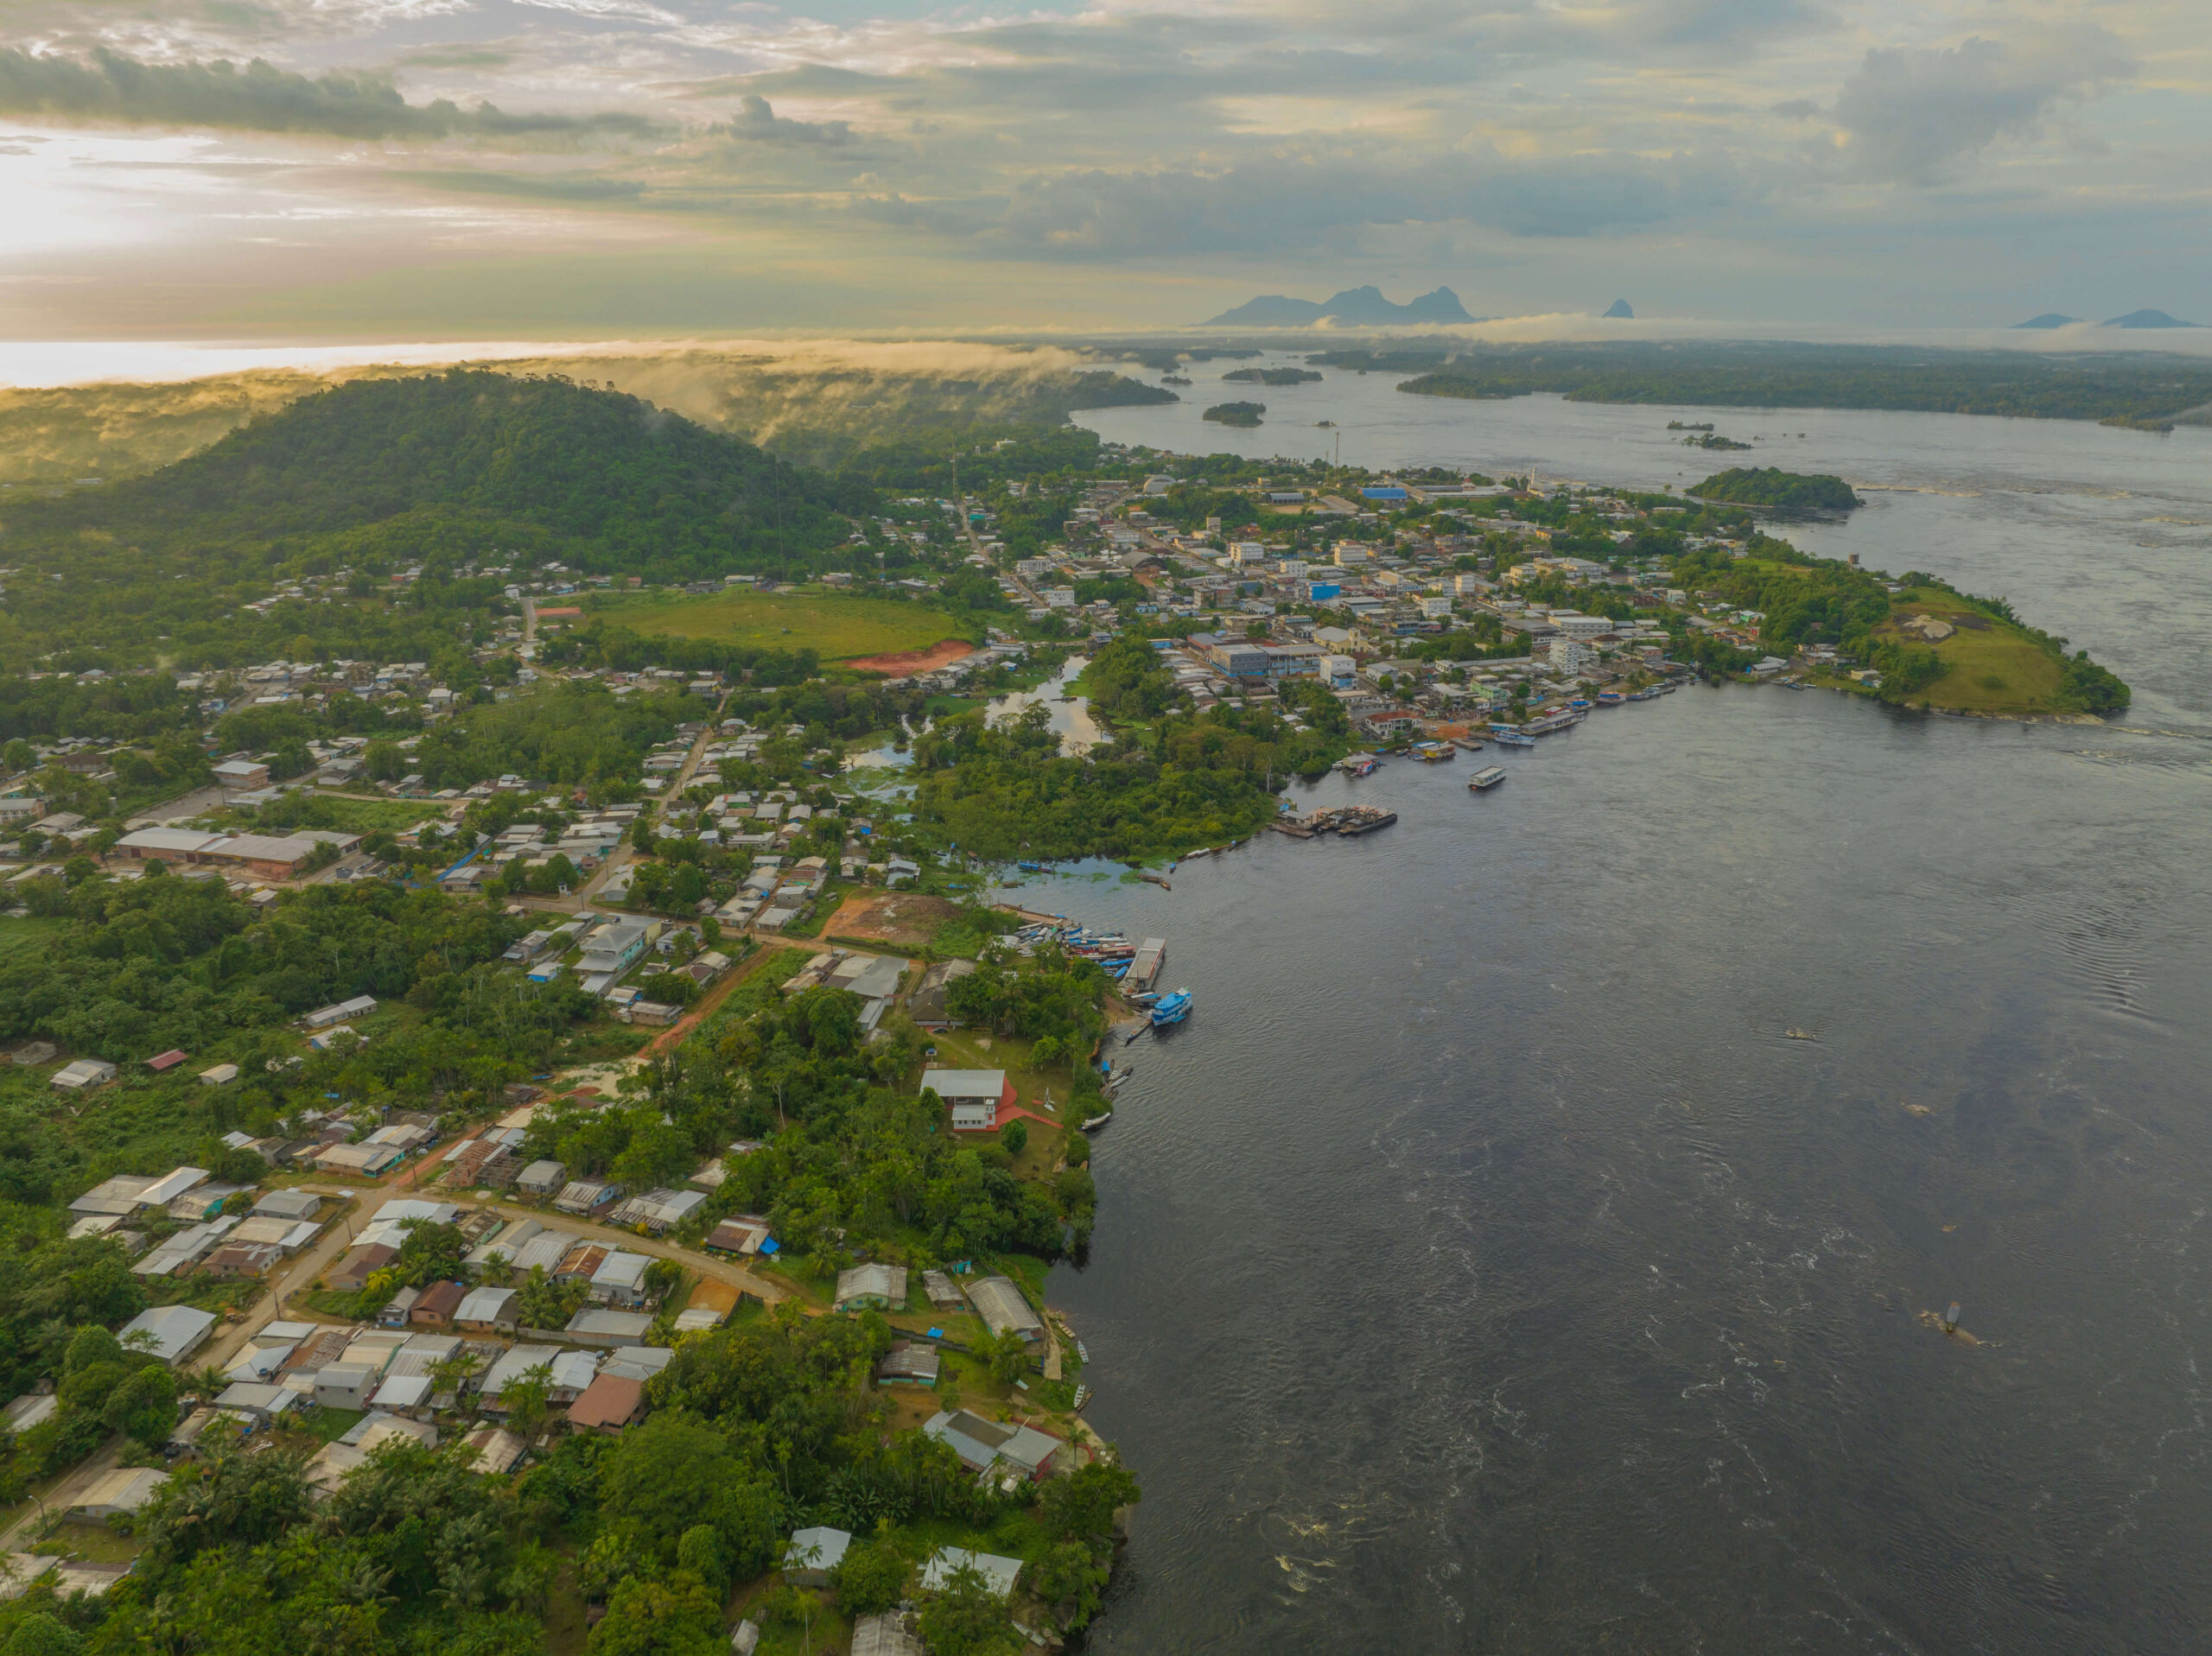 São Gabriel da Cachoeira city, Amazonas state (courtesy of Chico Batata/TJAM)